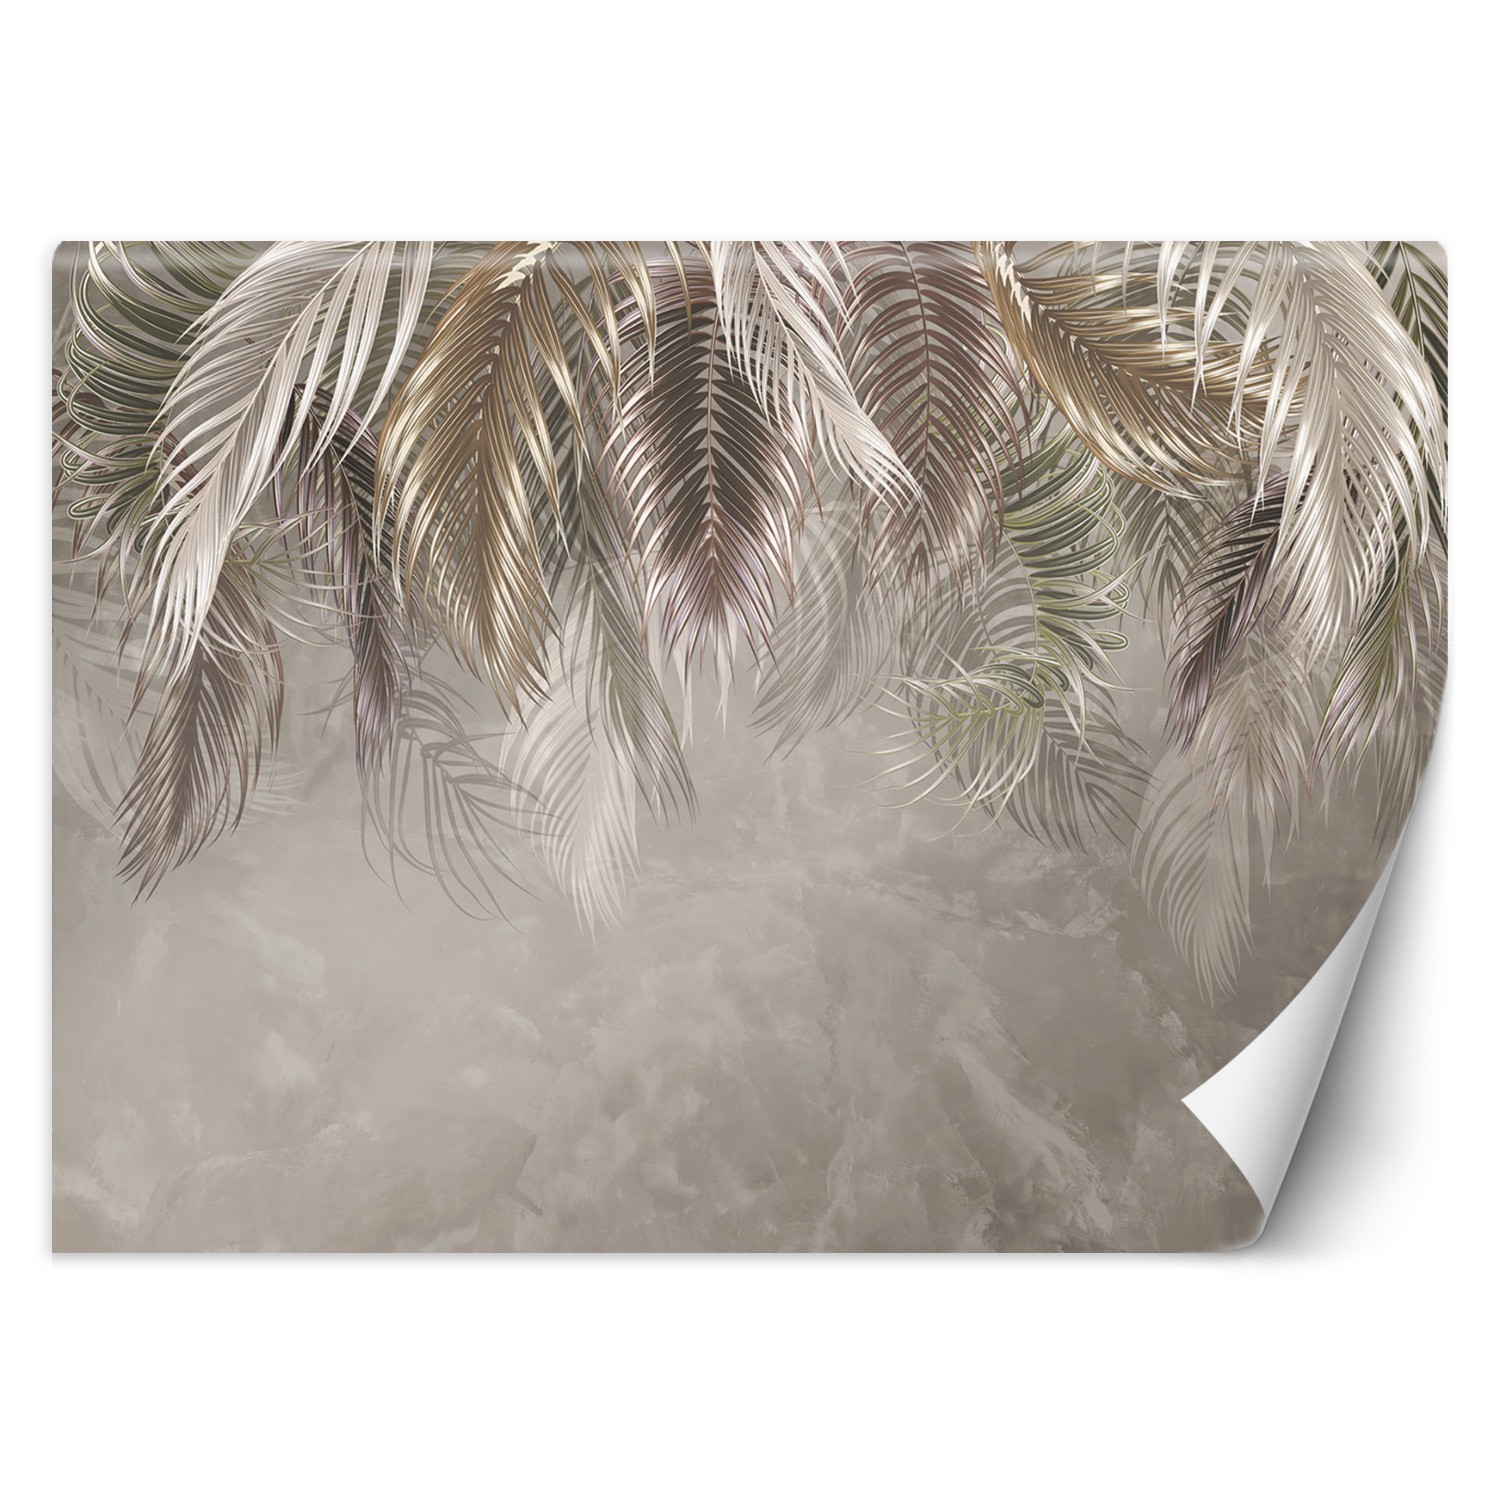 Trend24 – Behang – Palmbladeren 3D – Vliesbehang – Fotobehang 3D – Behang Woonkamer – 350x245x2 cm – Incl. behanglijm